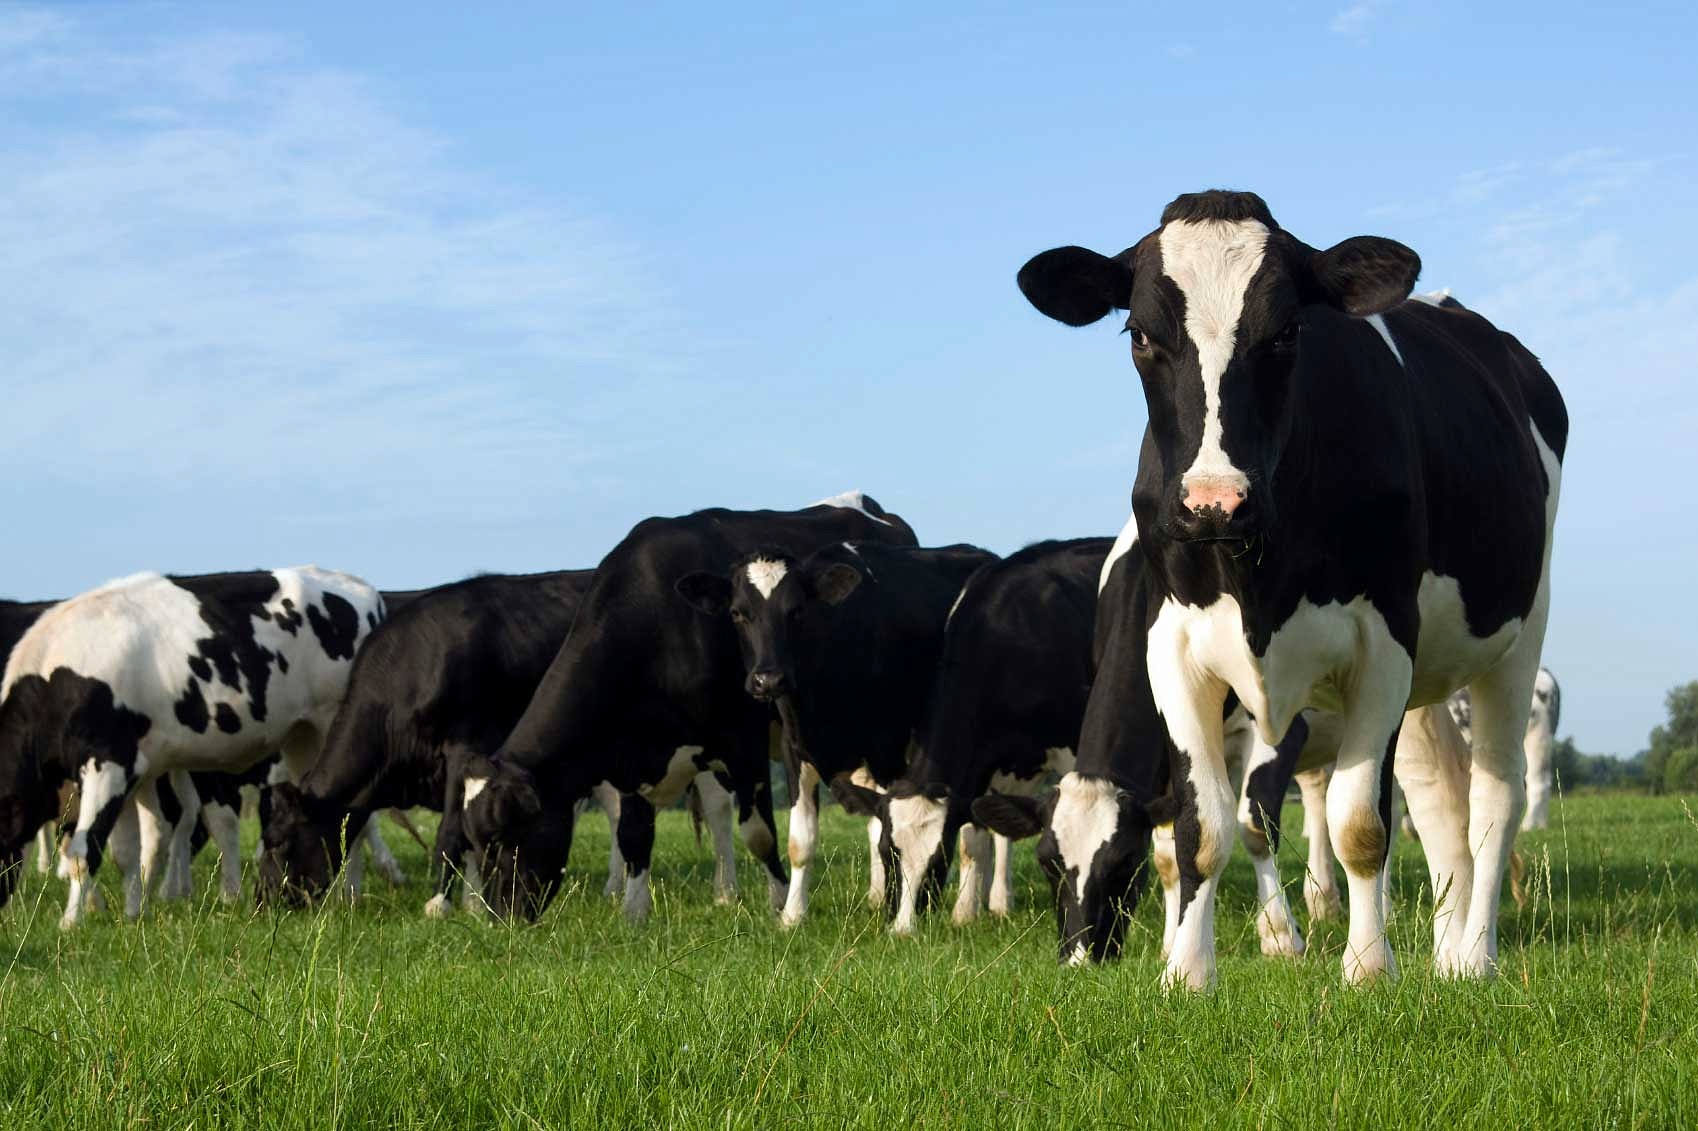 В Воронежской области начались выплаты субсидий производителям молока